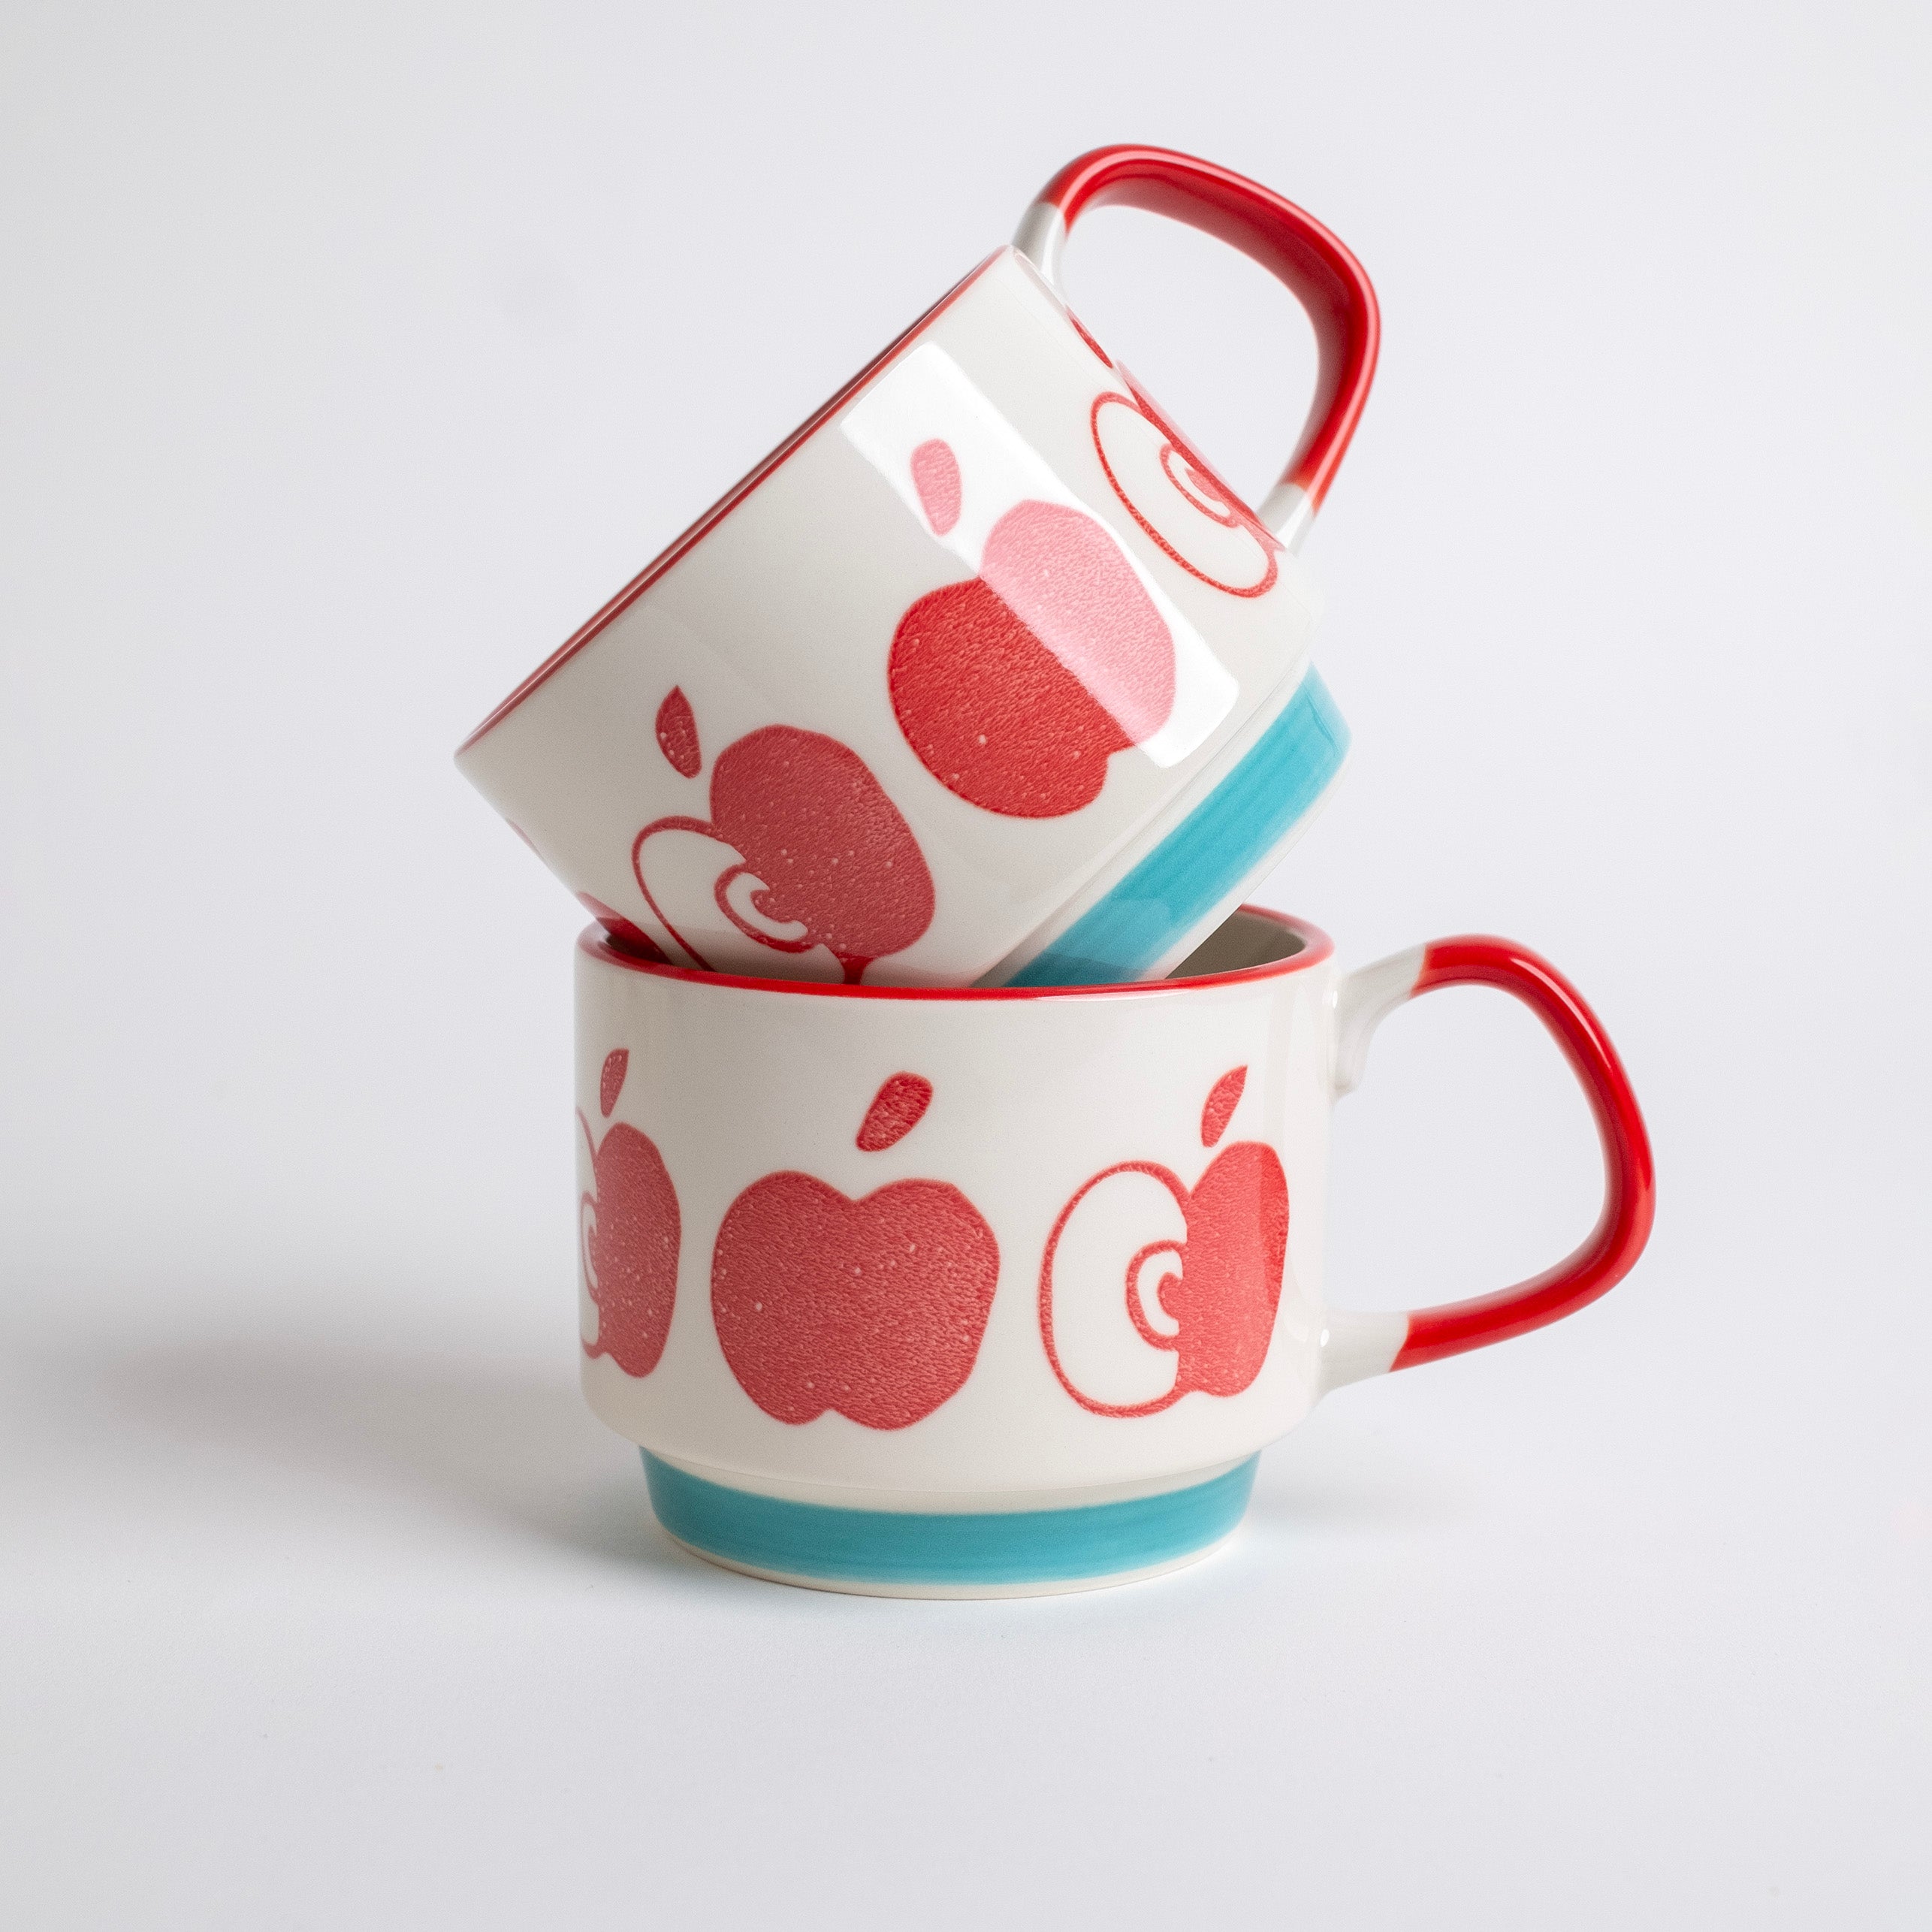 izawa-apple-mug-2.jpg